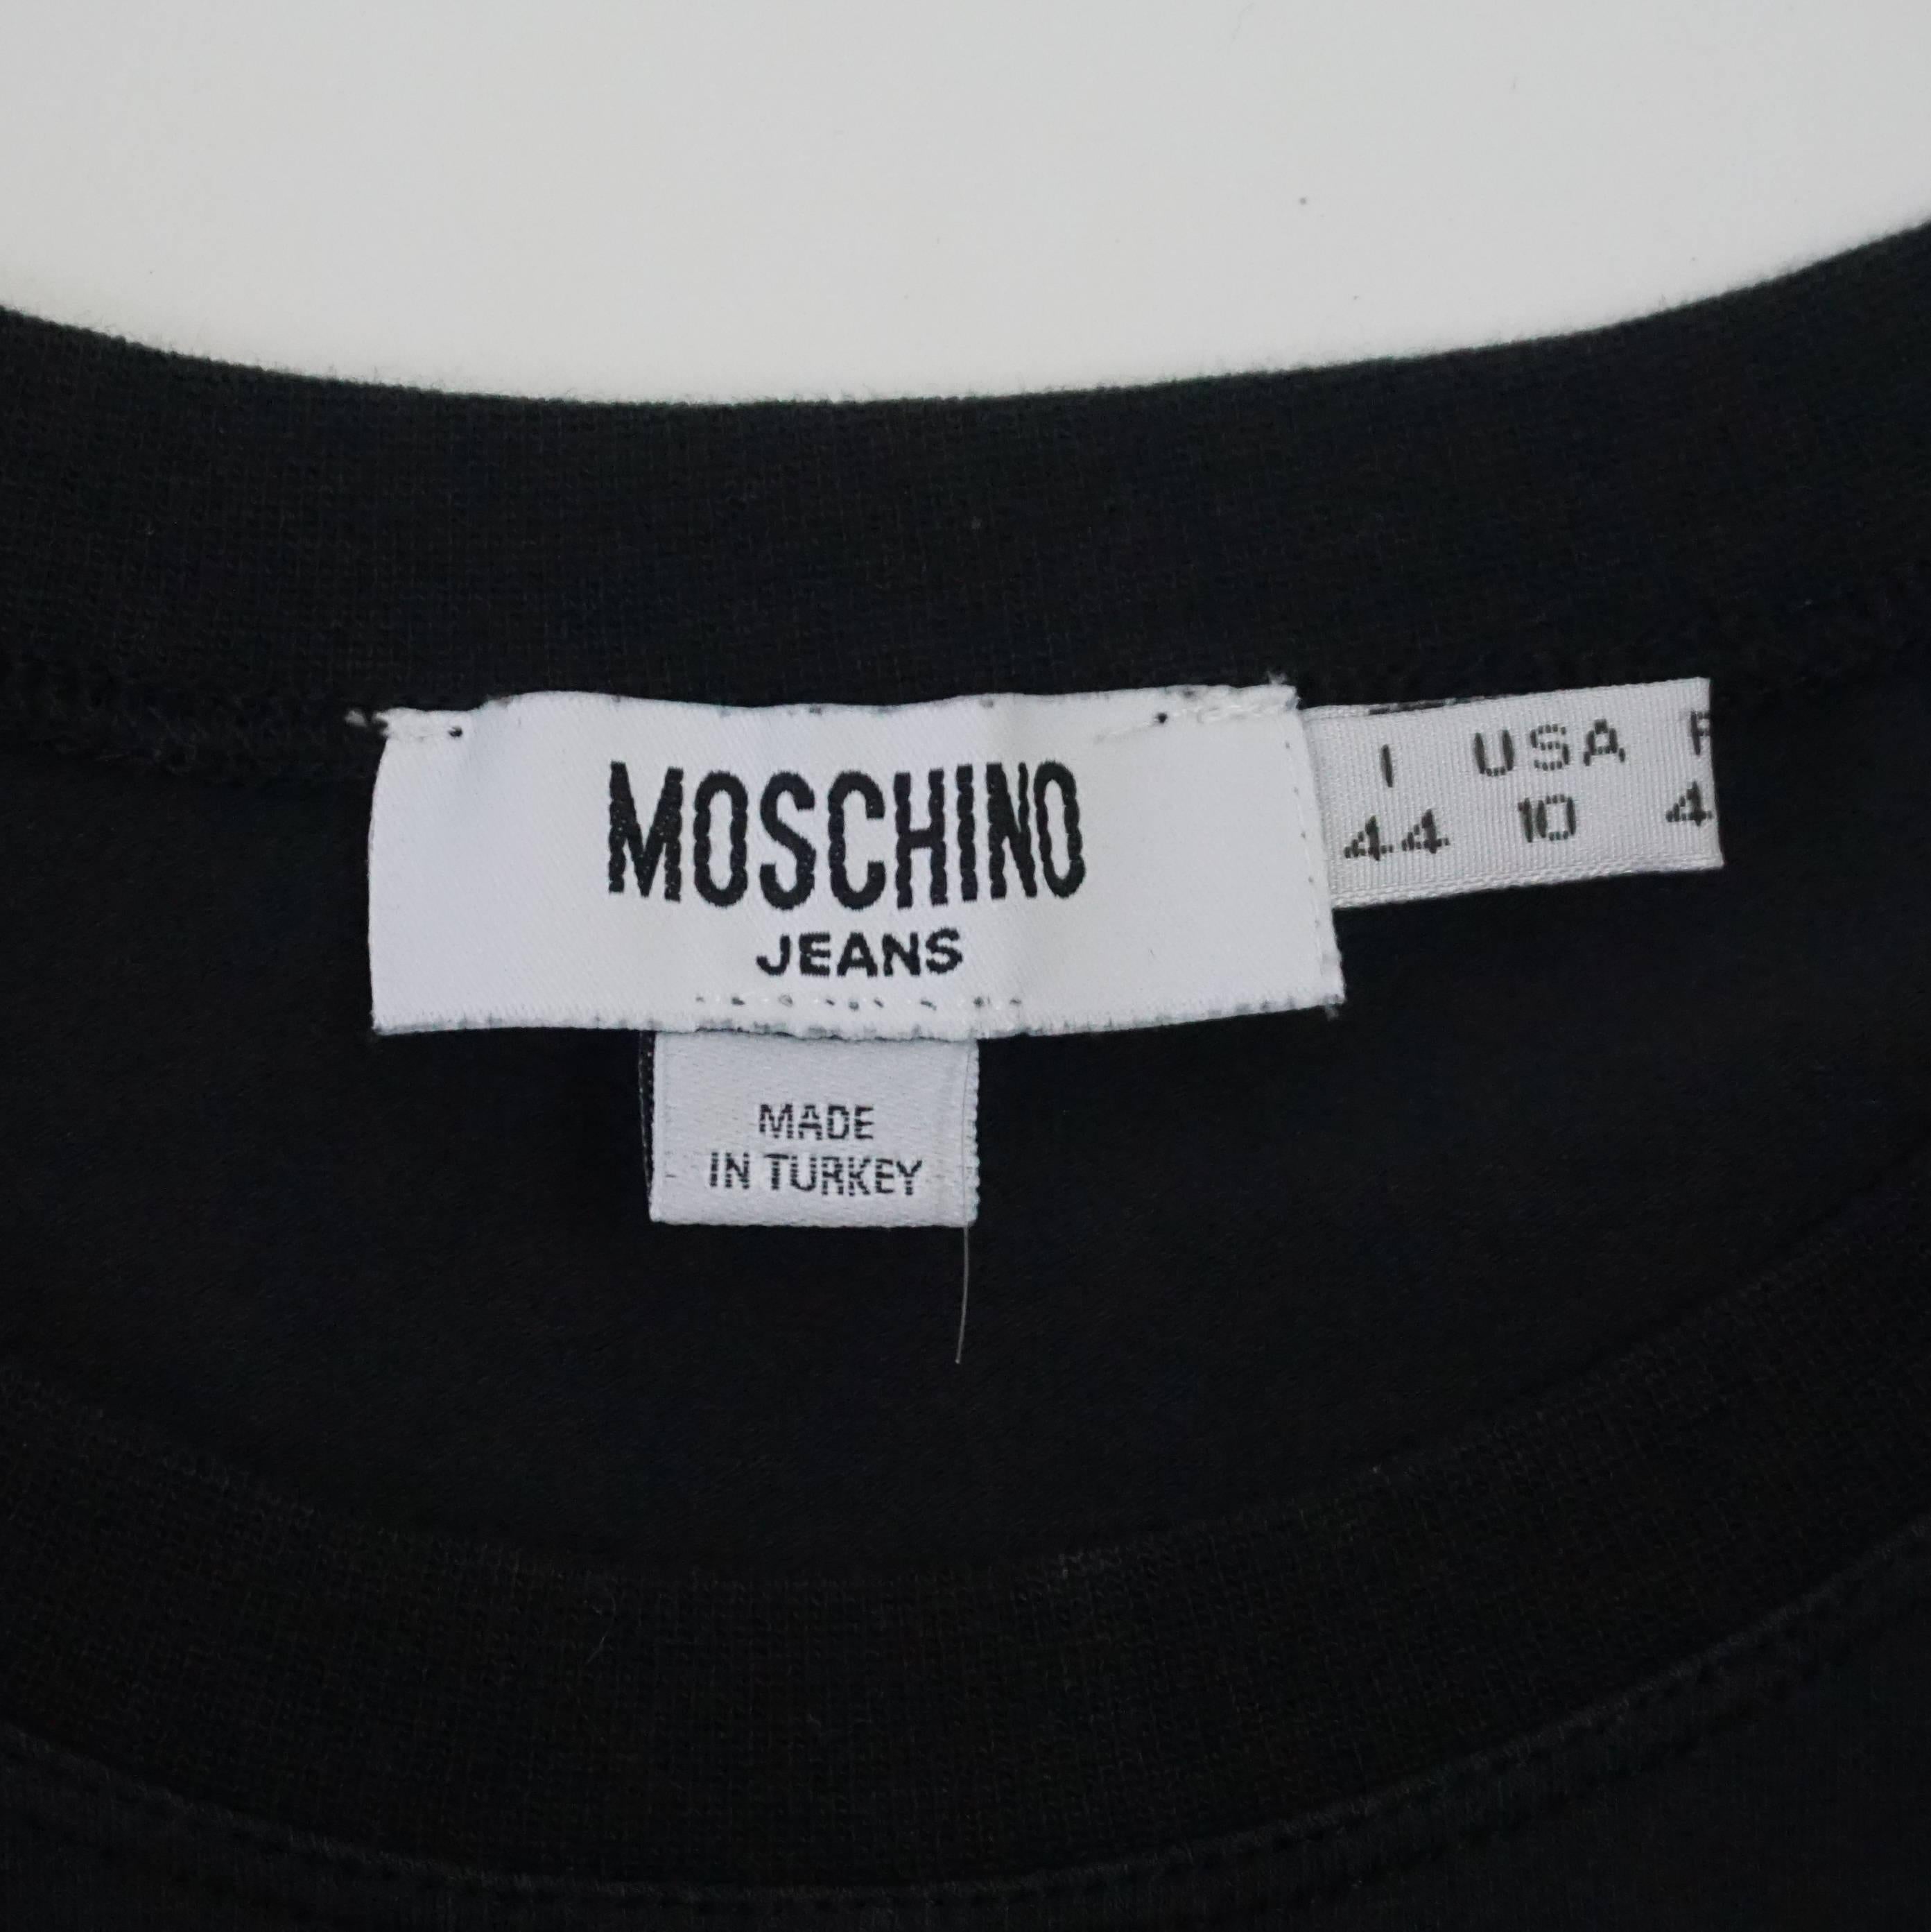 Moschino Jeans Schwarzes T-Shirt aus Baumwolle und geblümter Farbe und Perlen im Vintage-Stil - 10 für Damen oder Herren